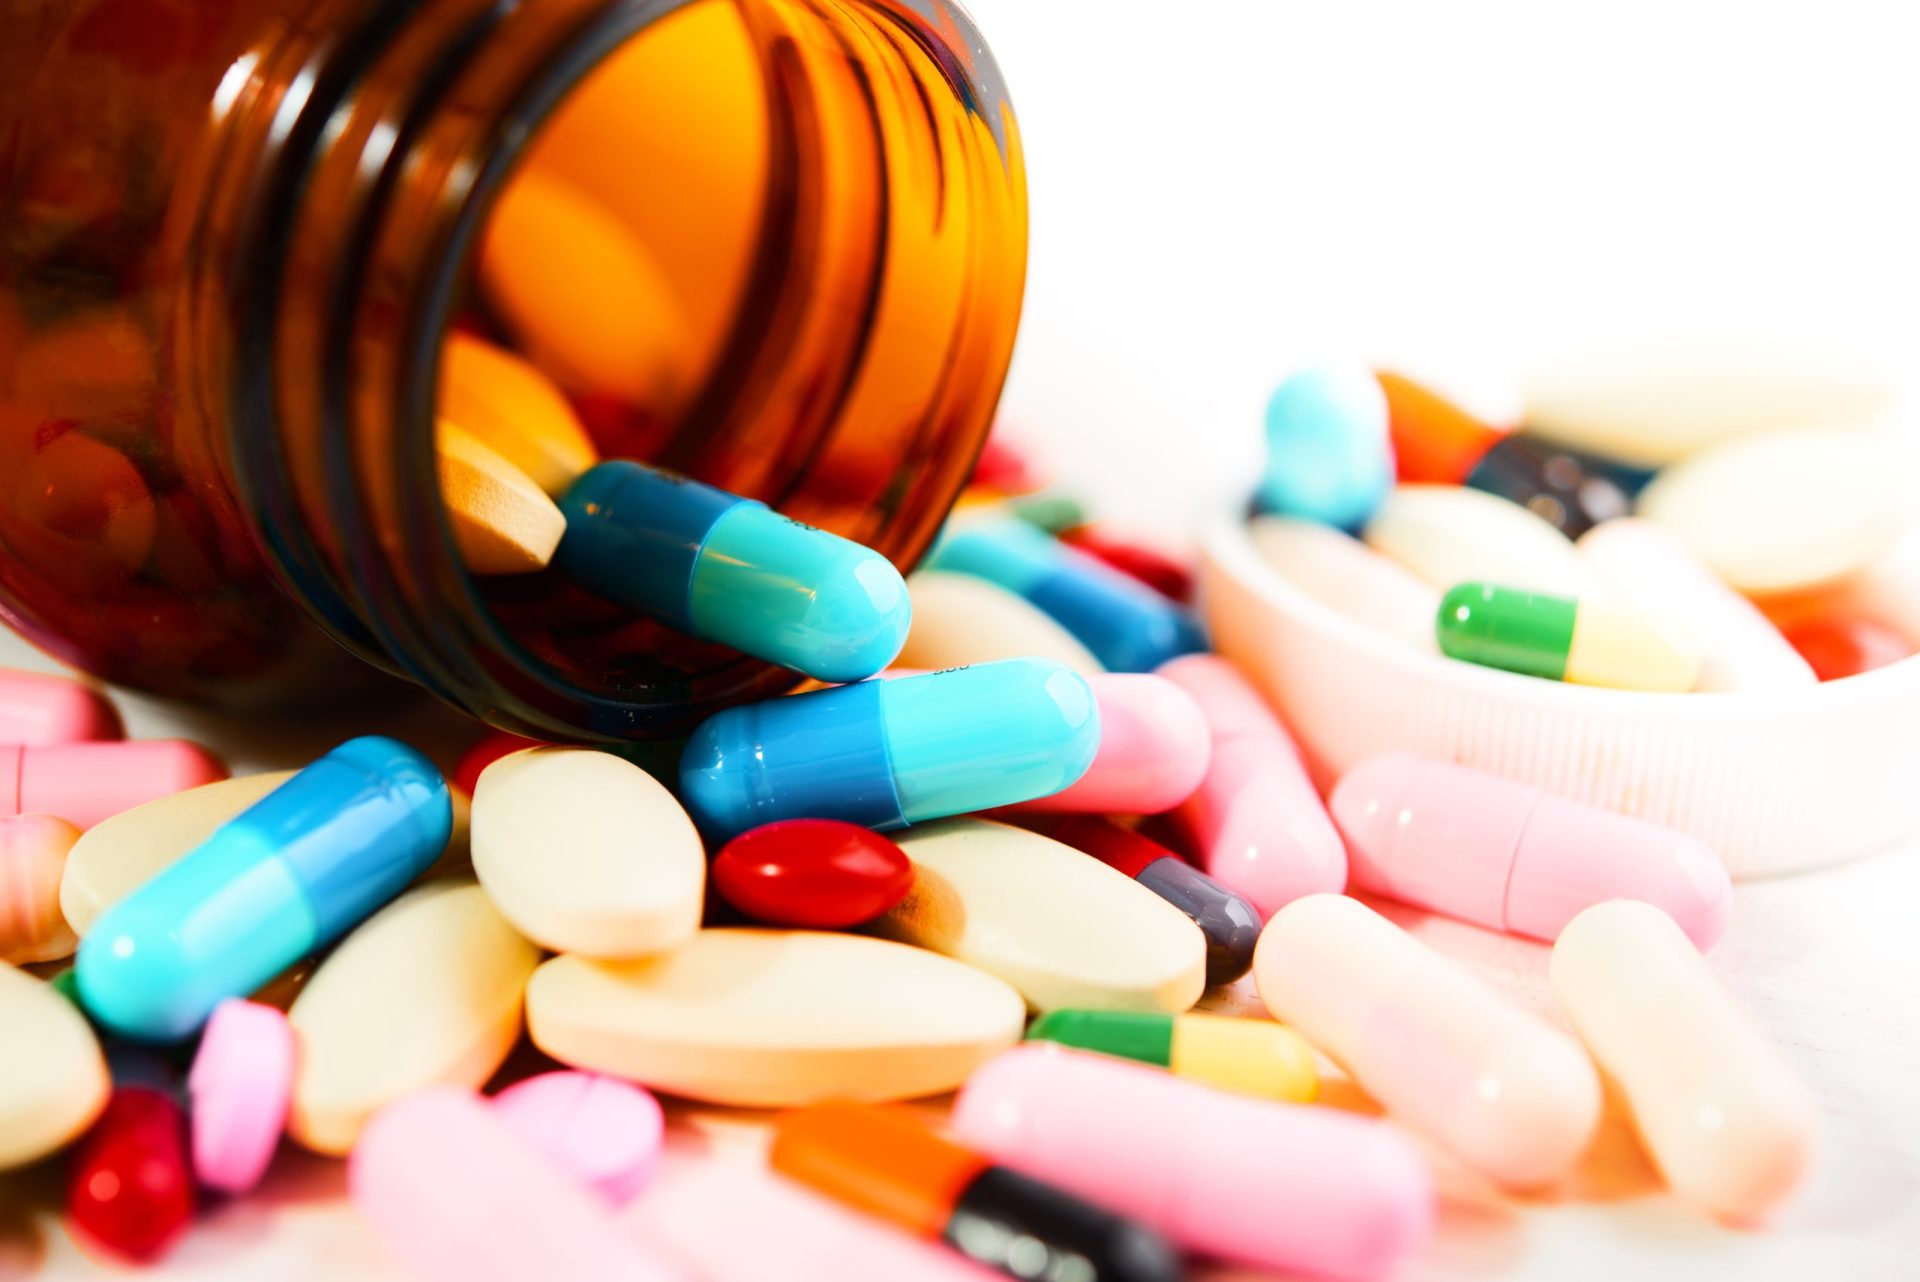 Antigo bastonário propõe mais medicamentos sem receita médica